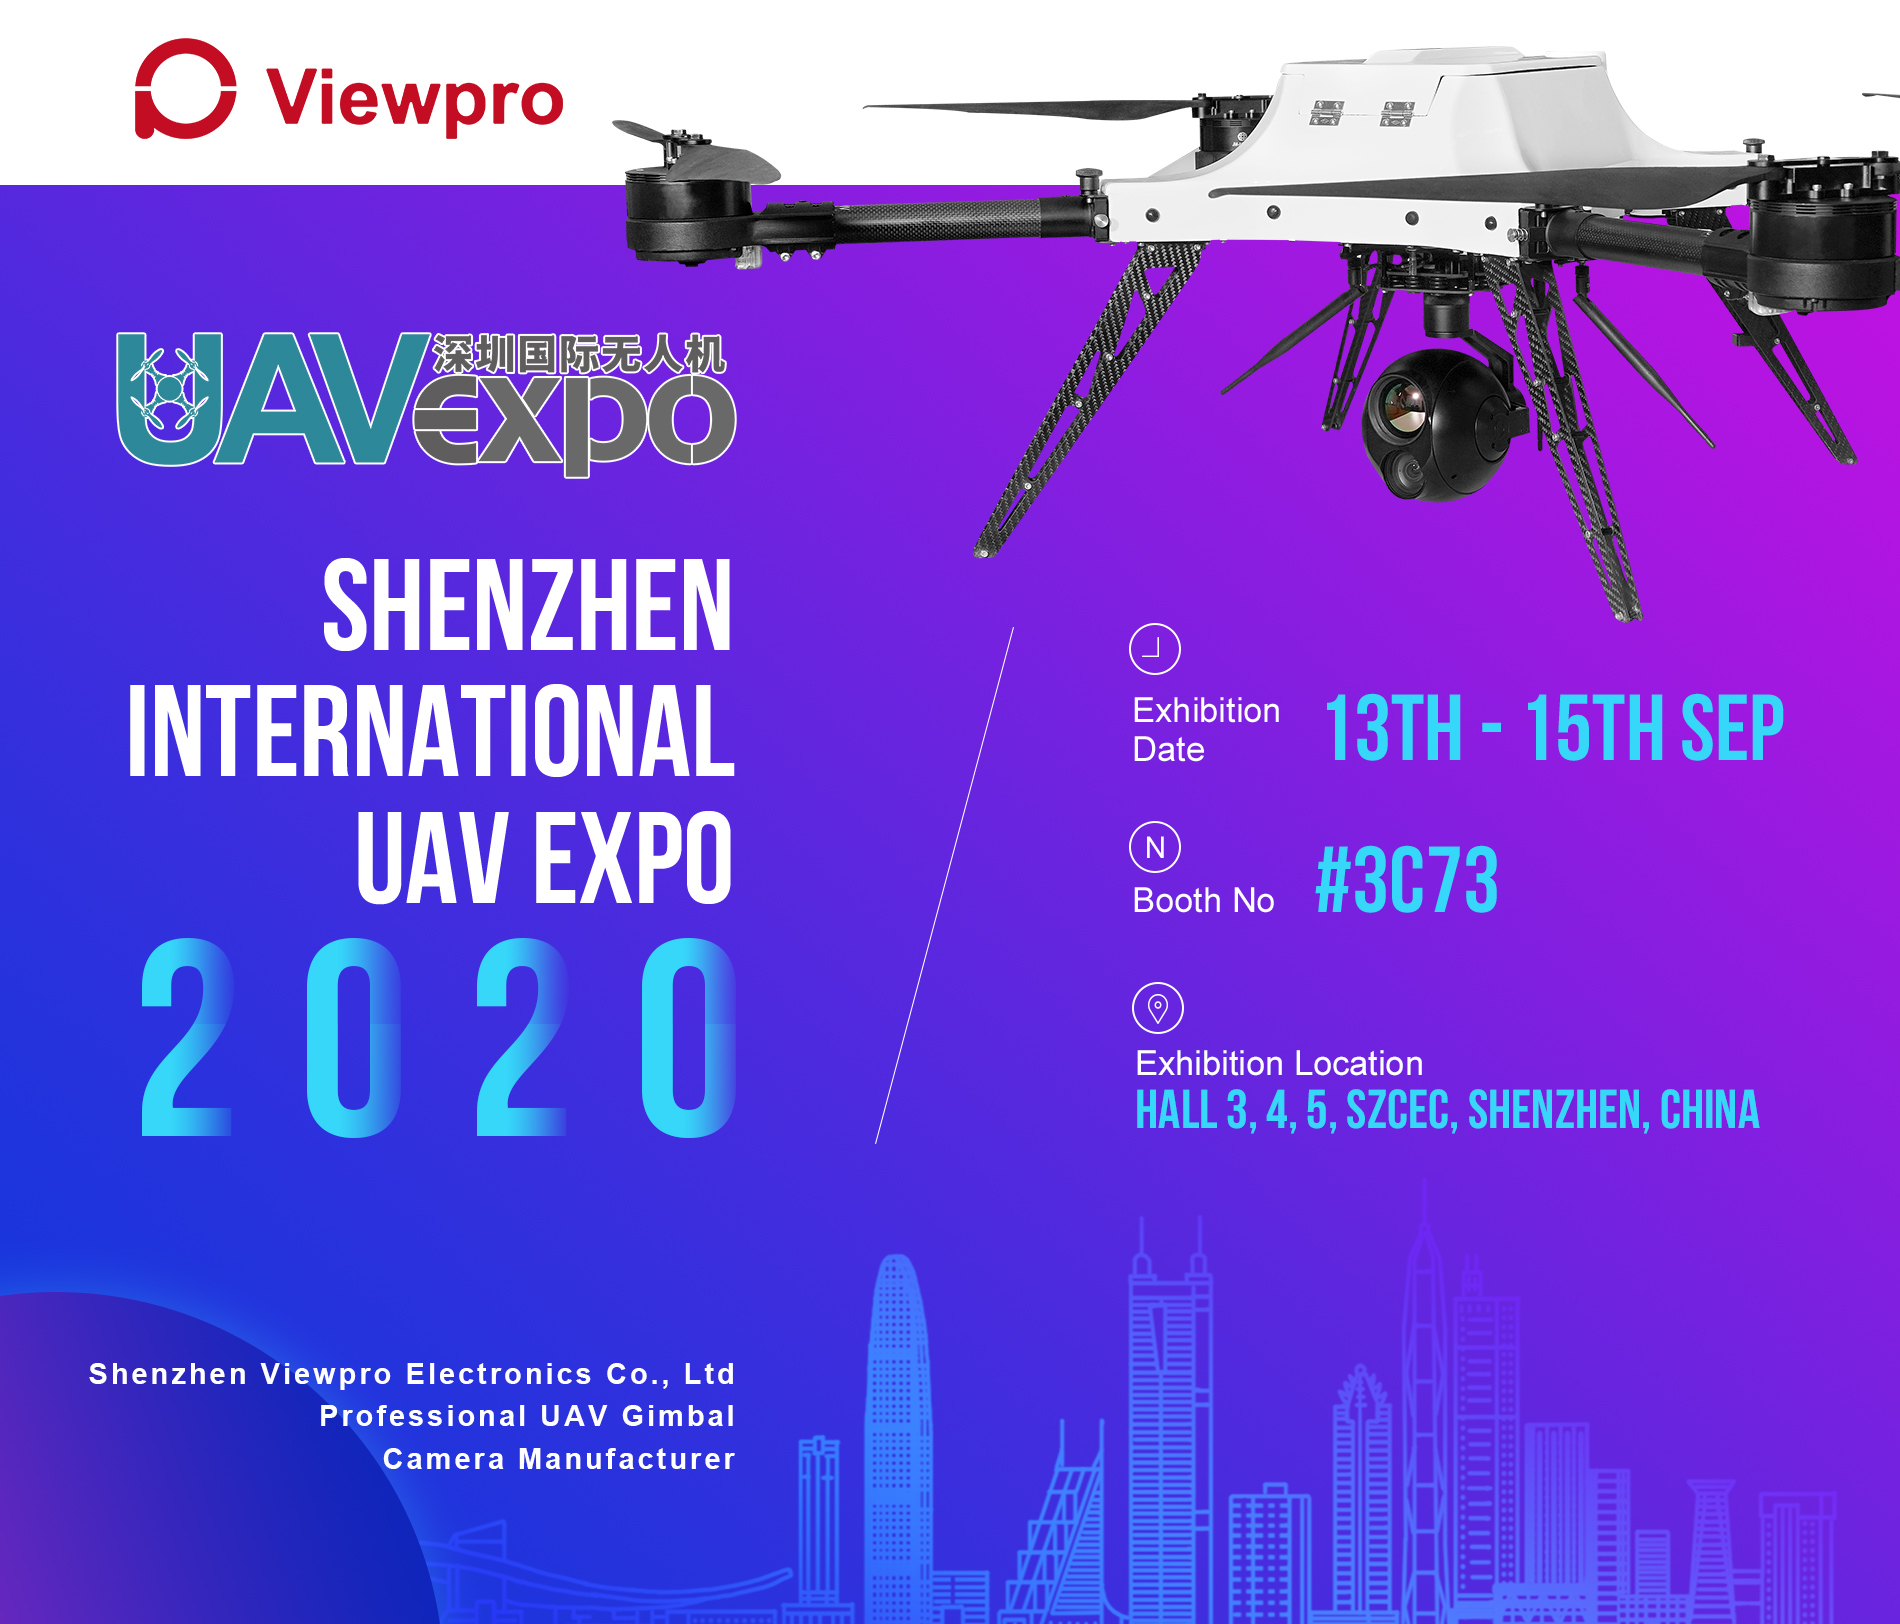 Shenzhen International UAV Expo 2020 Invitation